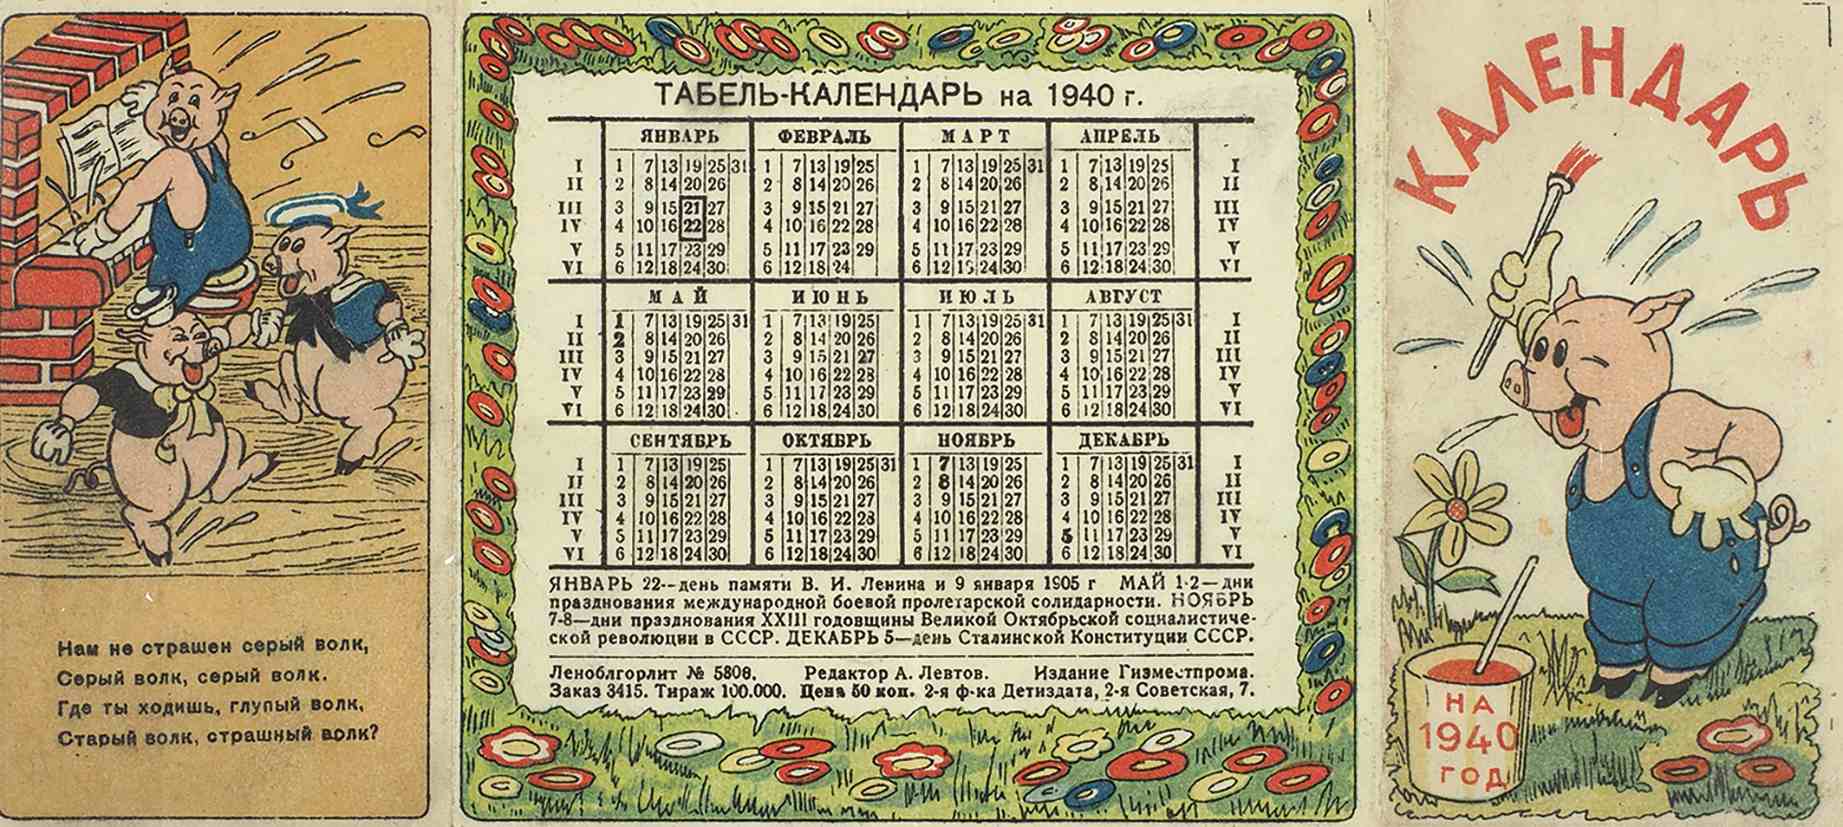 Какой день недели был 6 сентября. Календарь 1940 года. Календарь 1939 года. Календарь СССР 1940. Календарь 1939 года по месяцам.